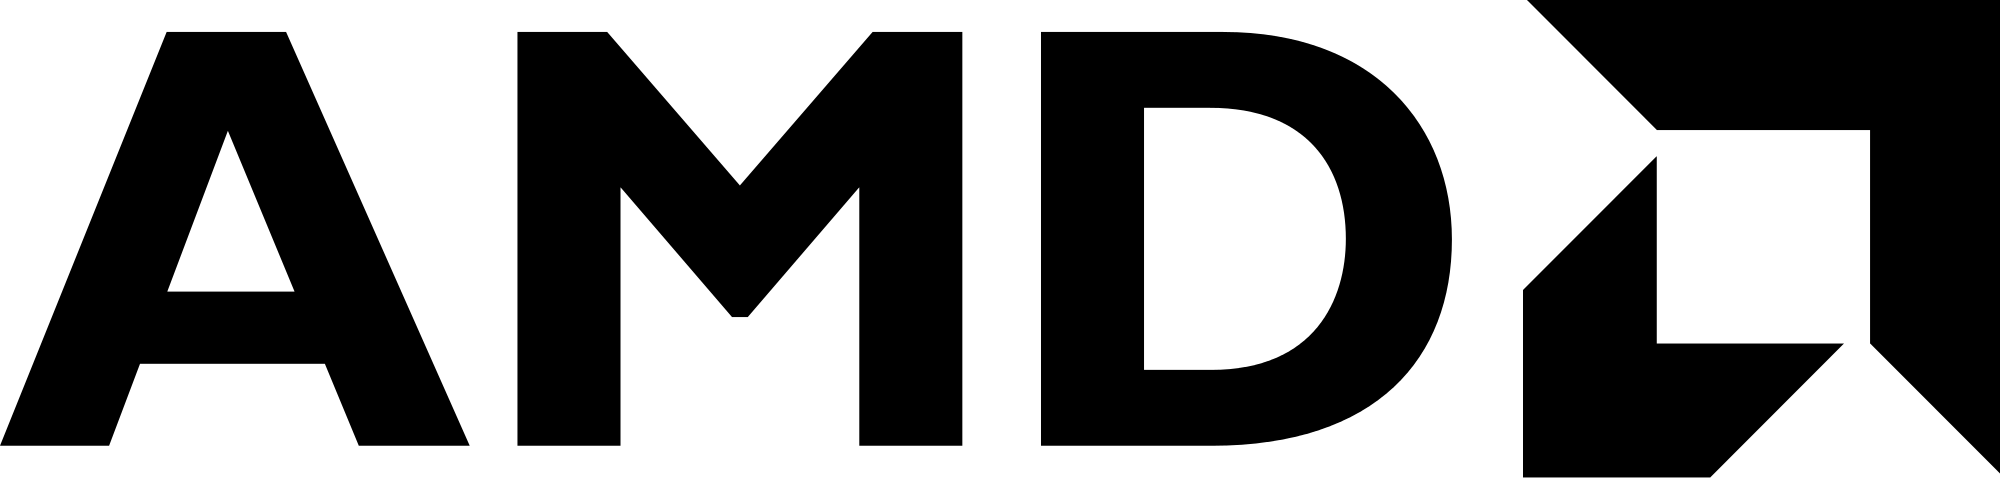 AMD FX Logo - Amd fx logo png 3 » PNG Image